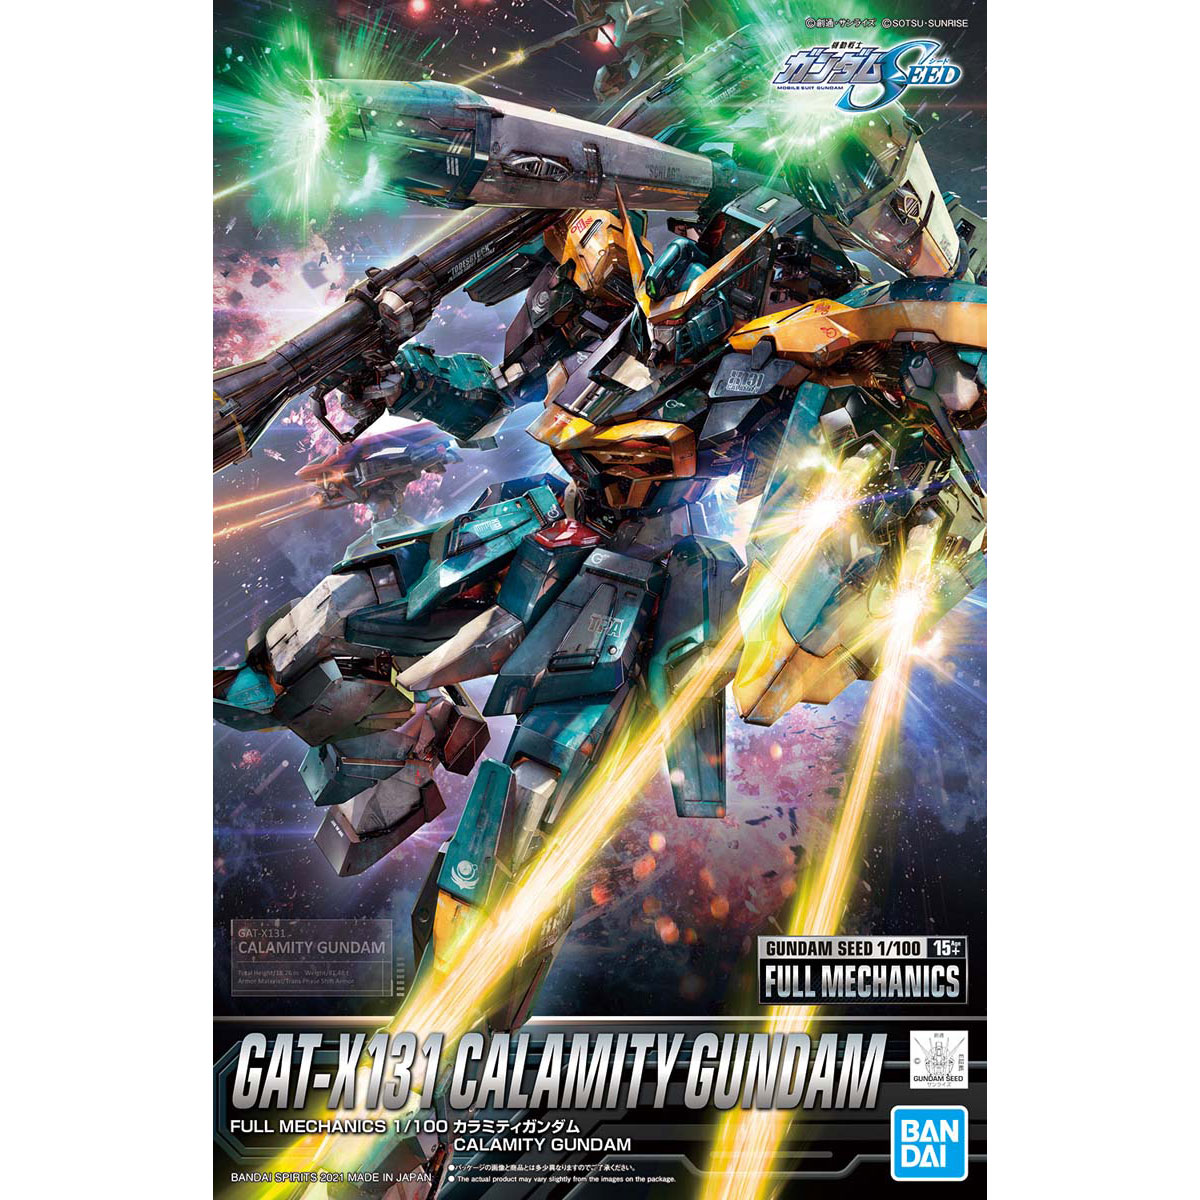 Full Mechanics Calamity Gundam Box